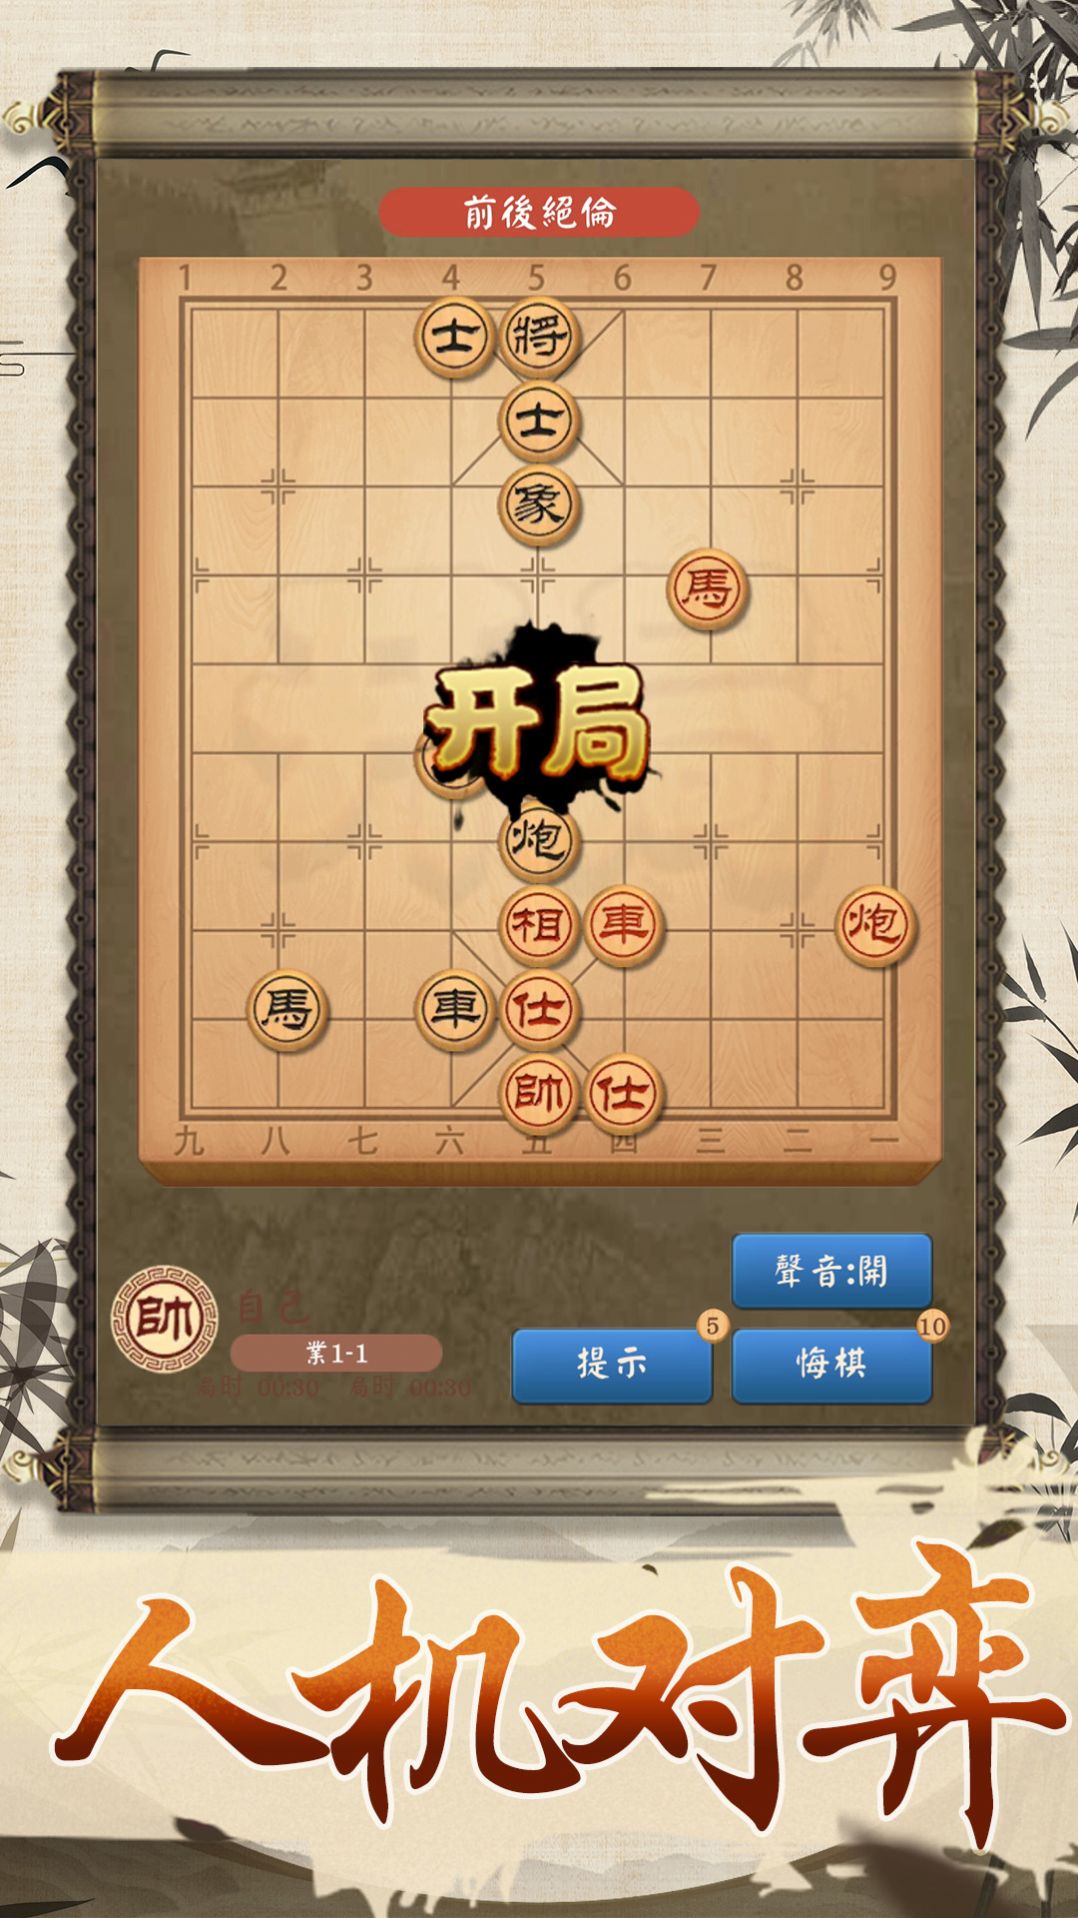 全民象棋大师游戏.jpg